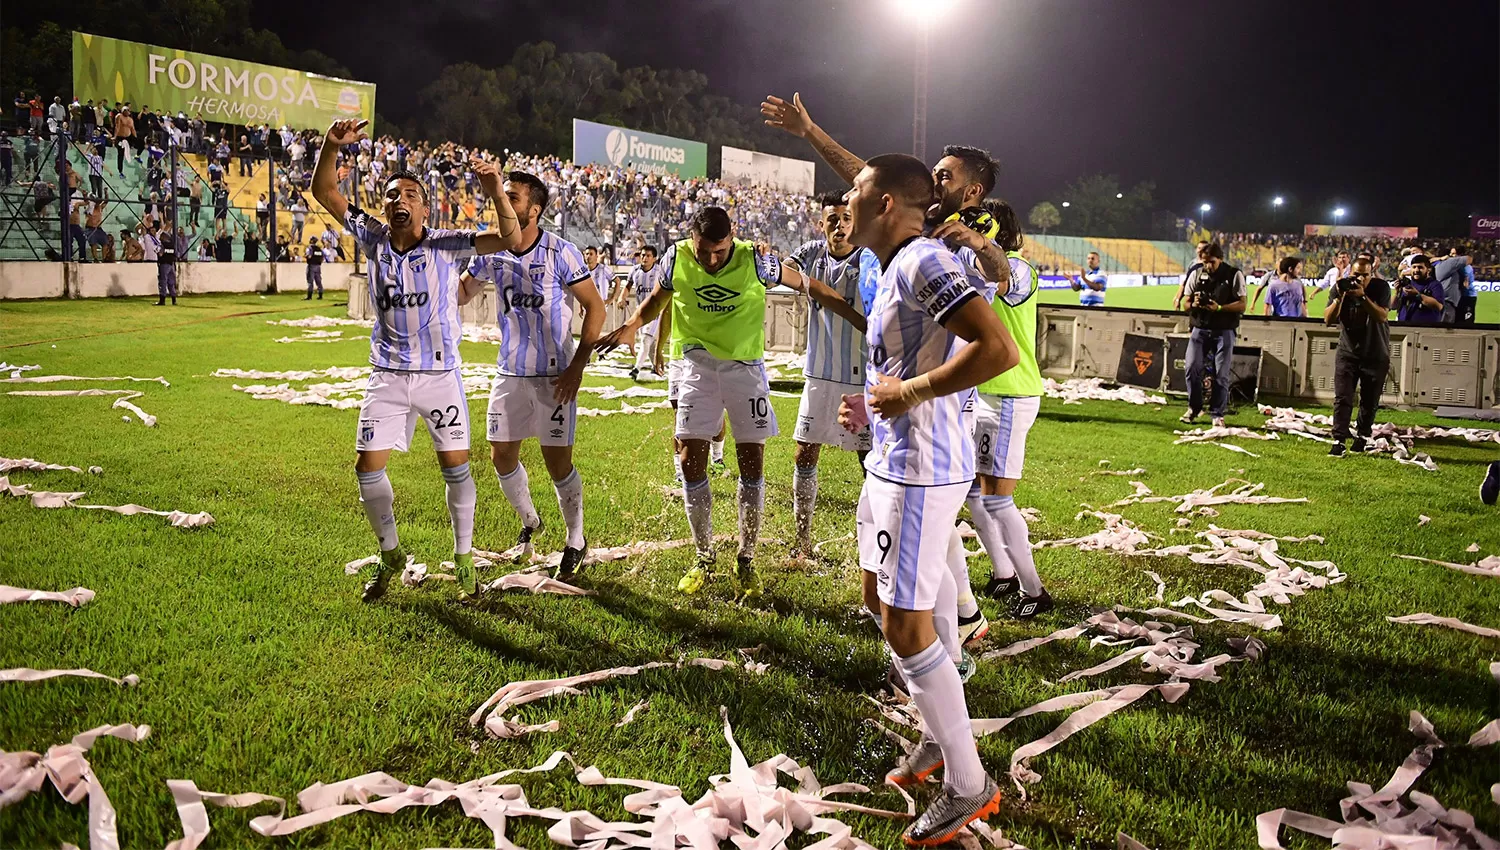 FESTEJO. Jugadores de Atlético celebran con los hinchas que viajaron a Formosa. FOTO DE ARIEL RAMOS ESPECIAL PARA LA GACETA